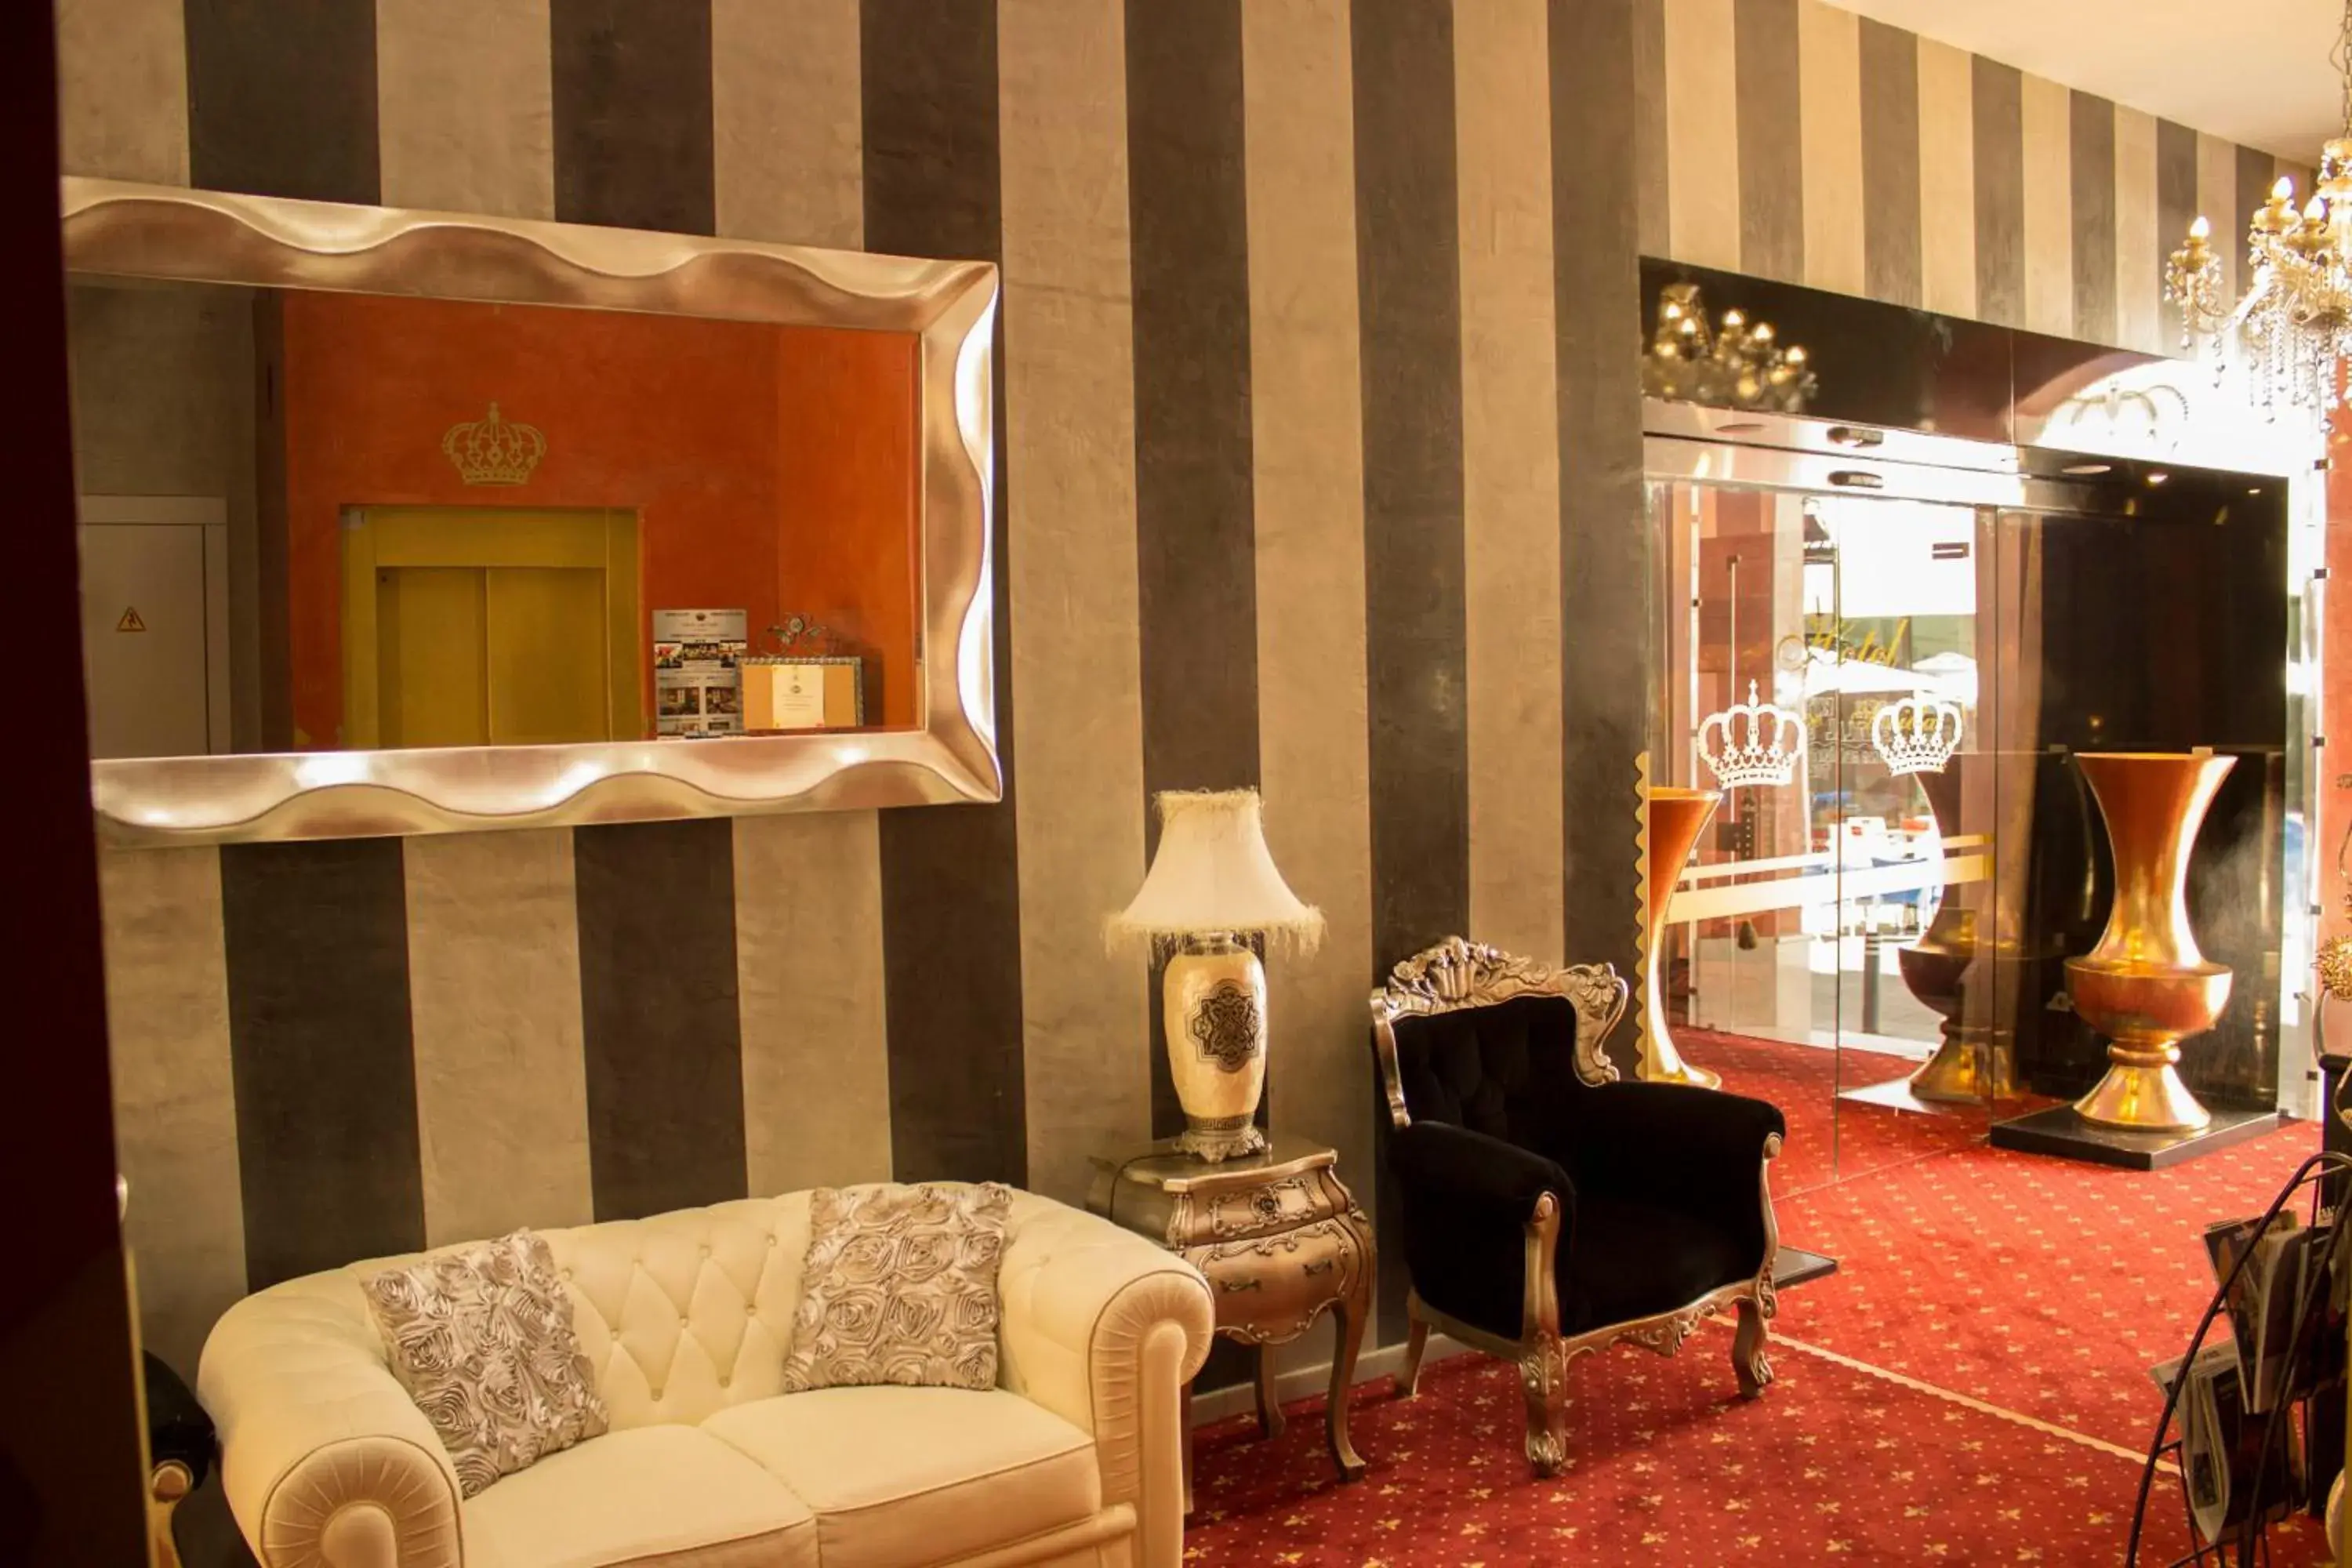 Area and facilities, Lobby/Reception in Hotel Palace Sevilla